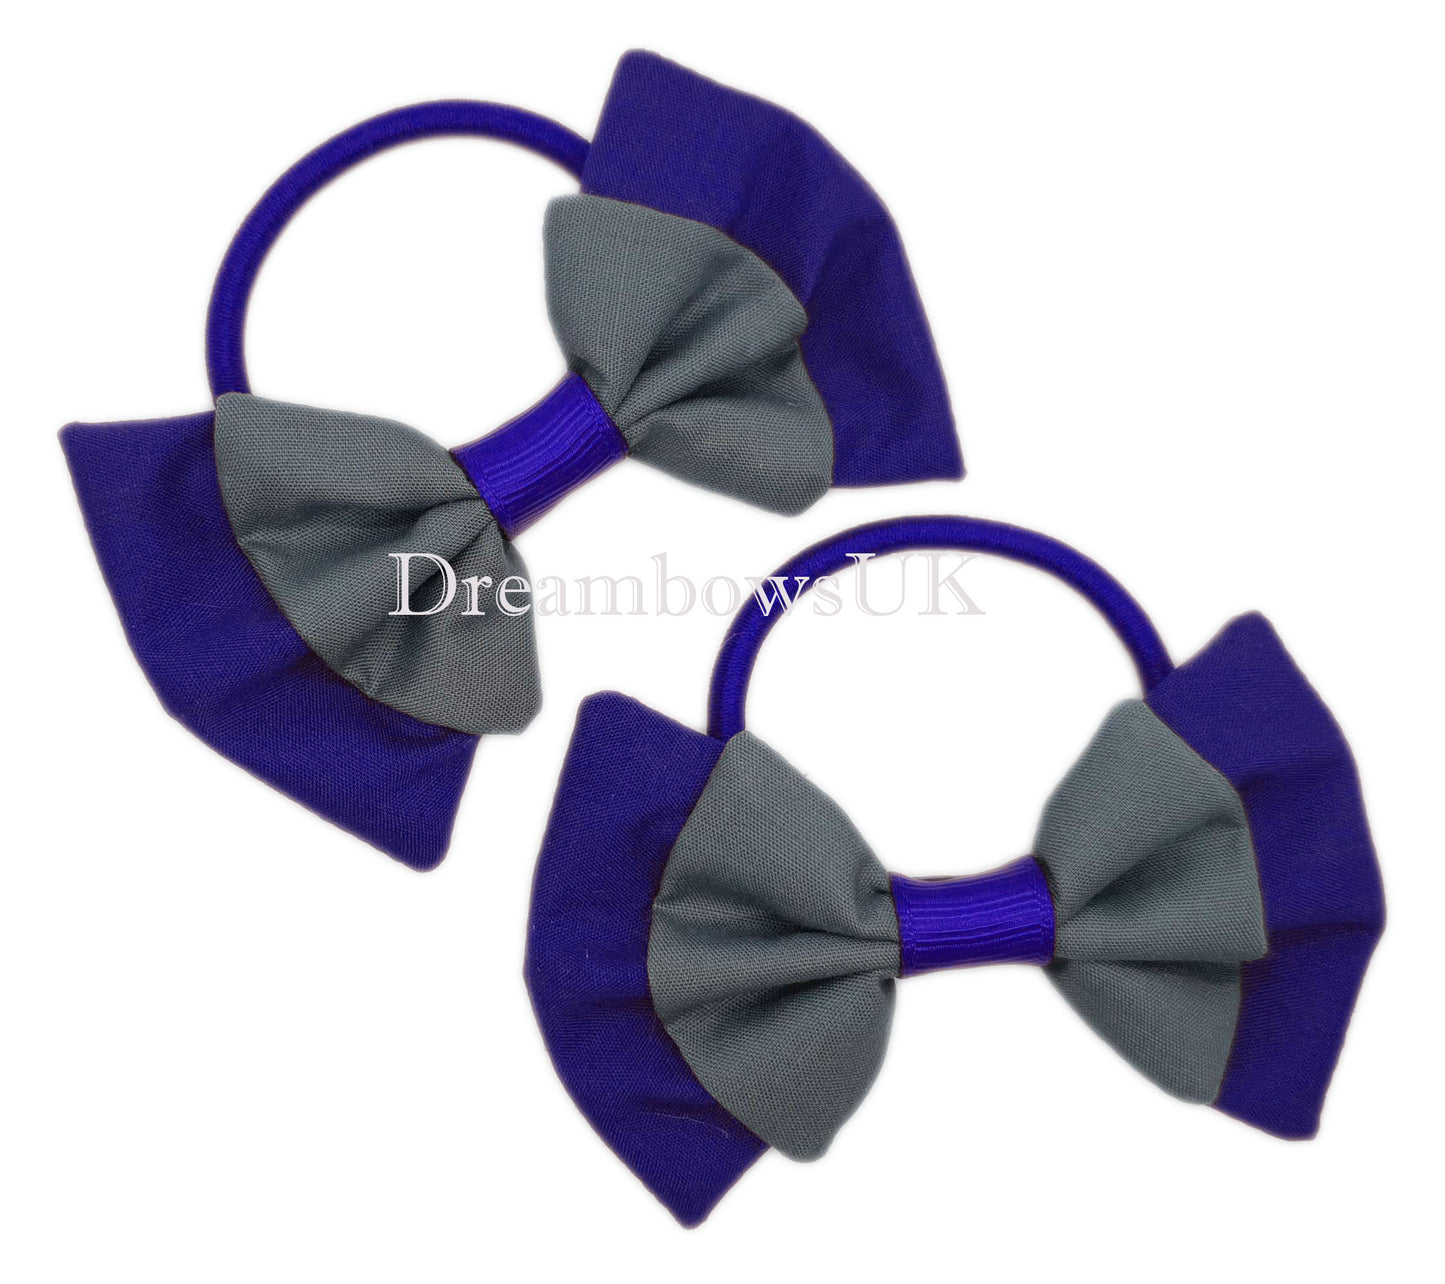 2x Royal blue and grey fabric hair bows